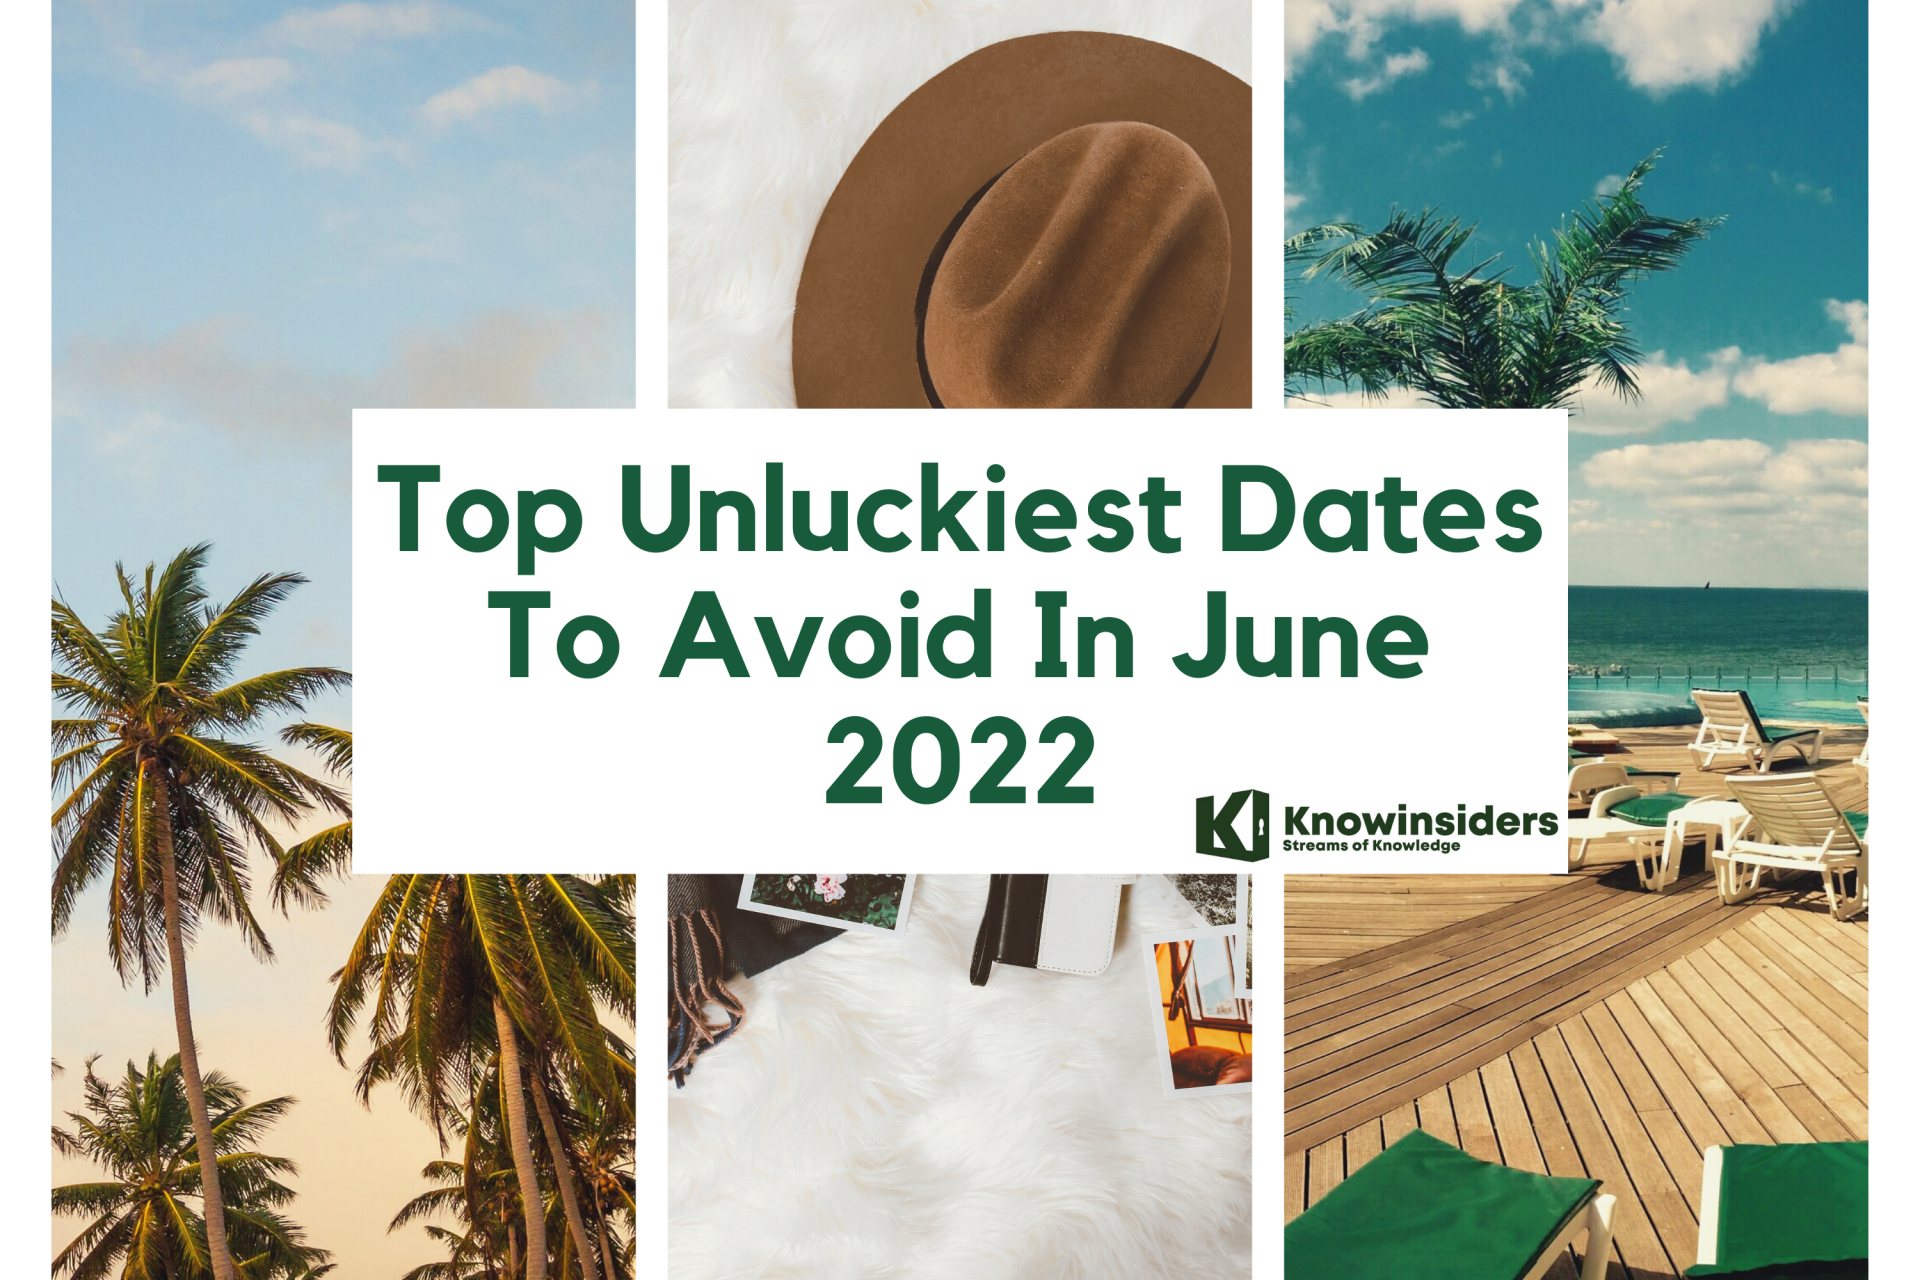 Top Unluckiest Dates To Avoid In June 2022